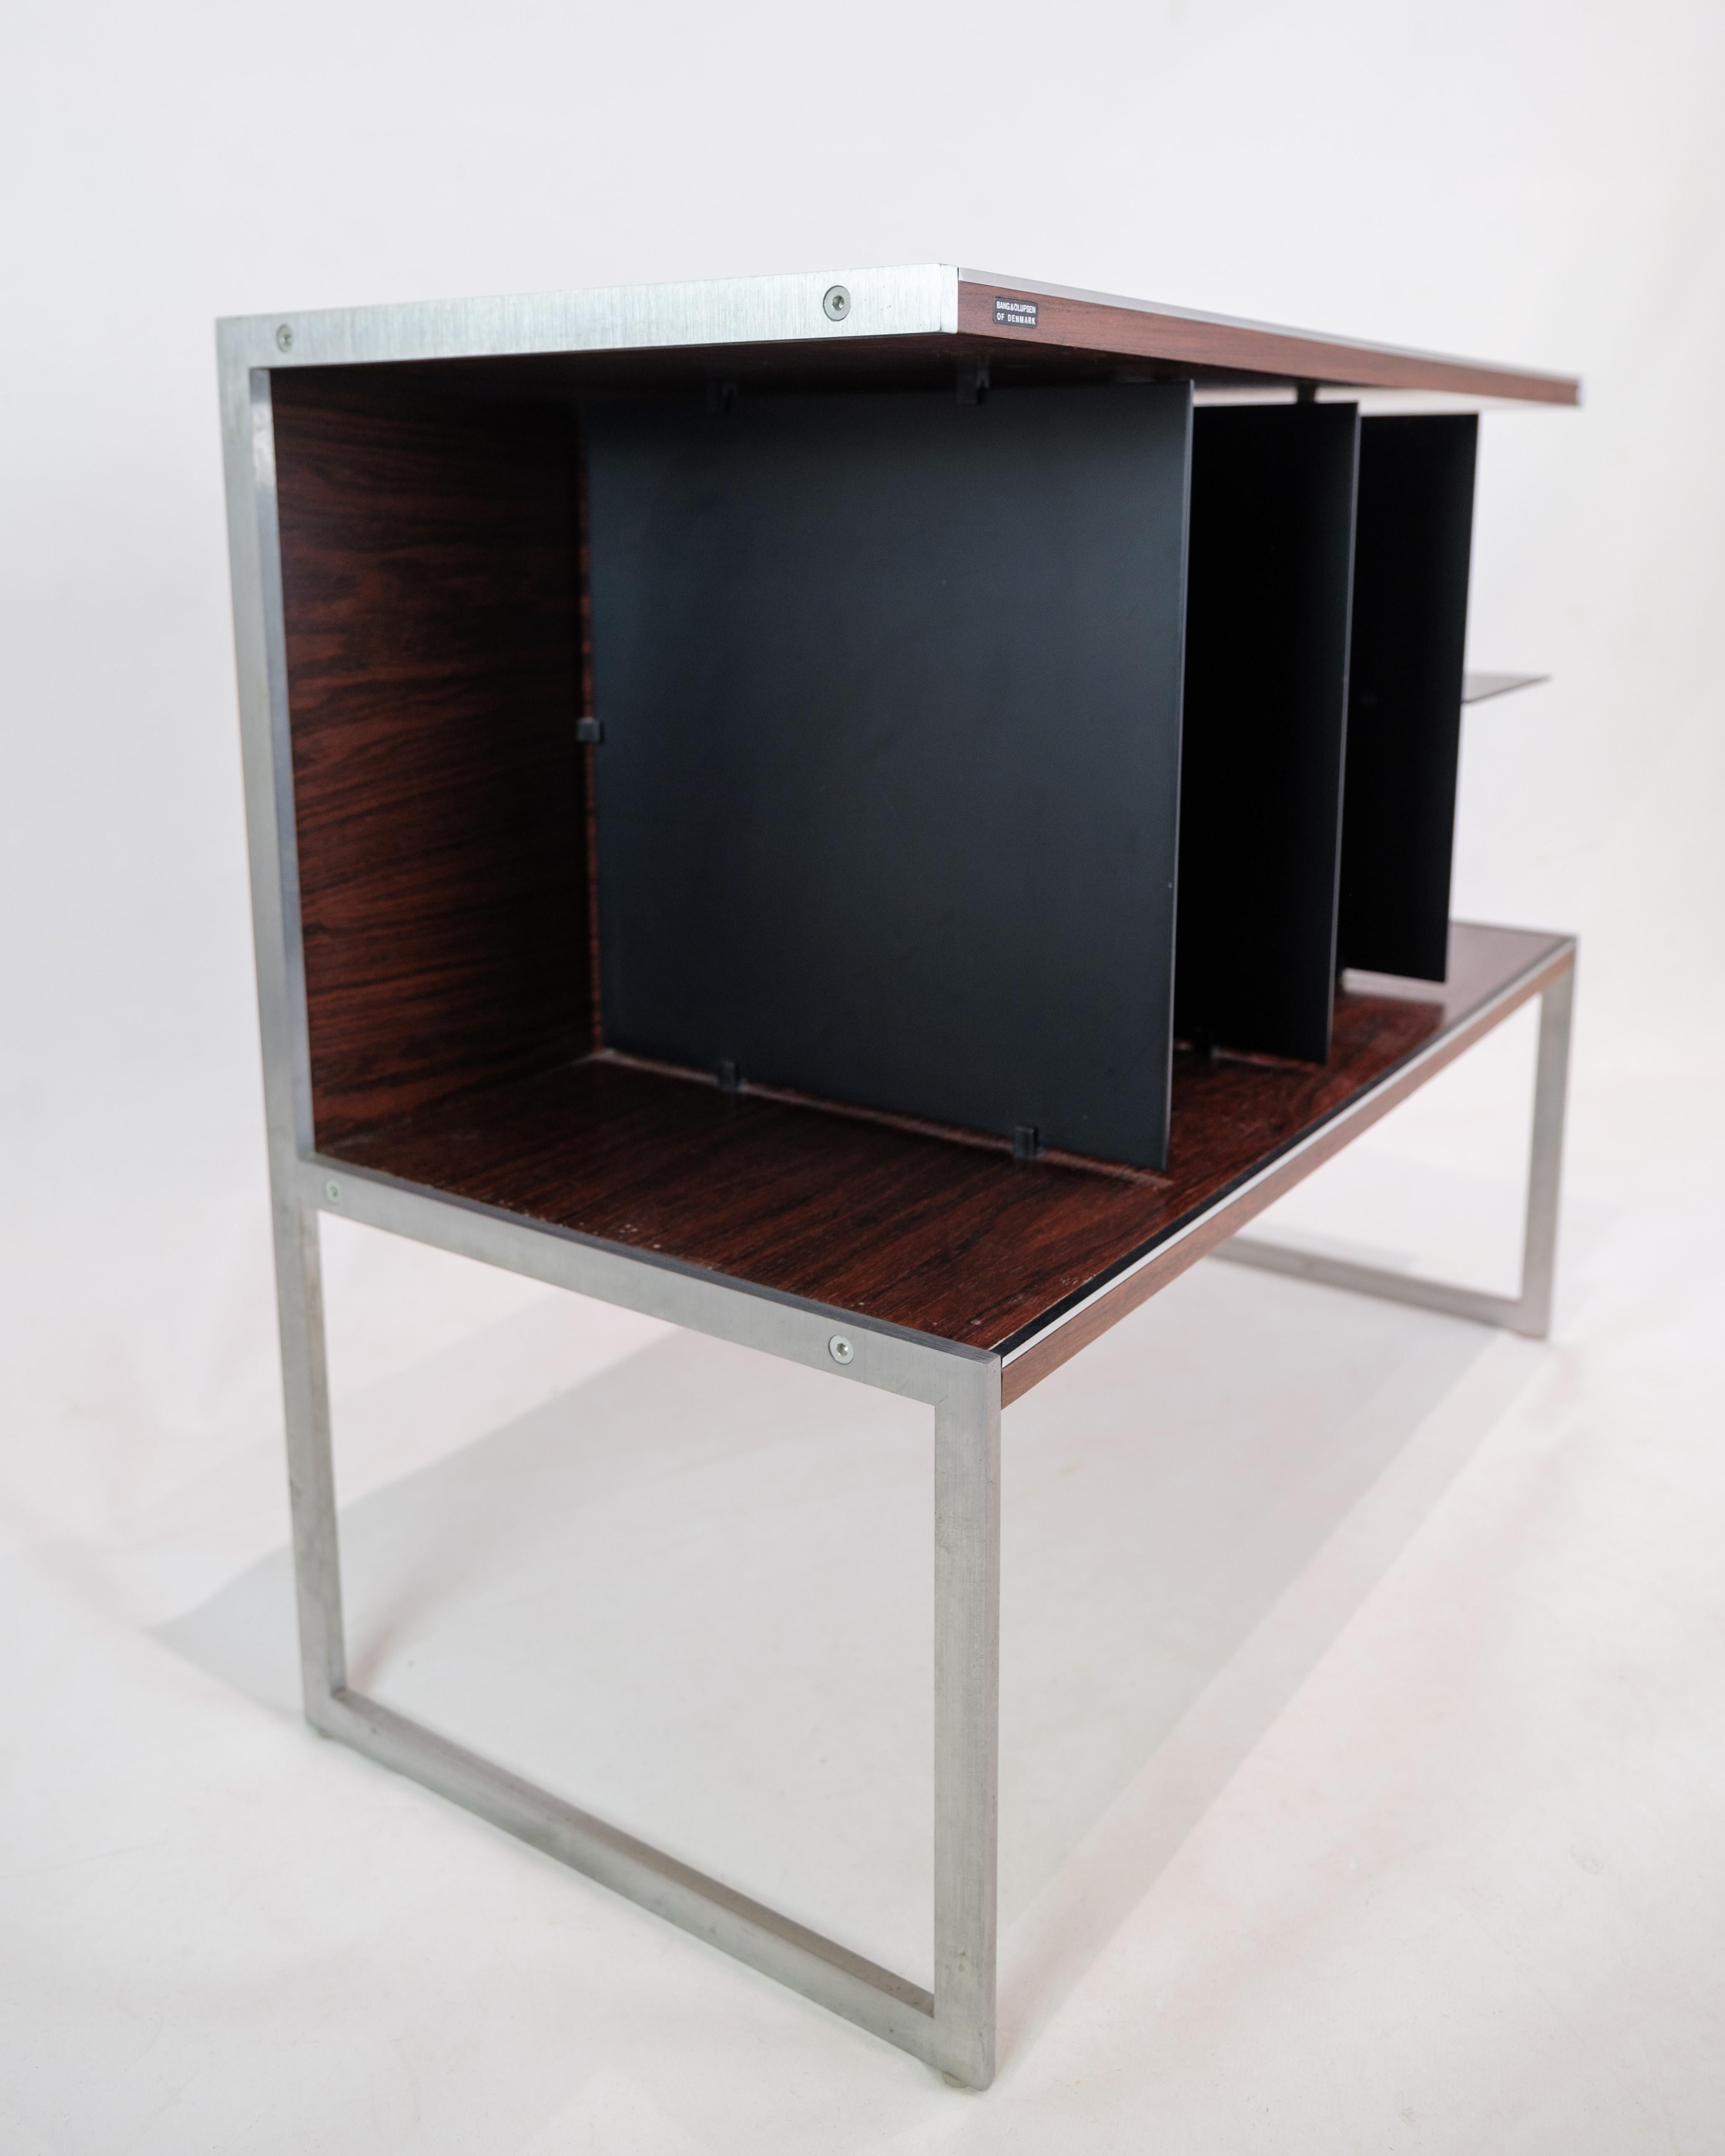 Dieser von Jacob Jensen in Zusammenarbeit mit Bang & Olufsen entworfene Fernsehschrank oder Beistelltisch ist ein hervorragendes Beispiel für die moderne Ästhetik und Funktionalität der 1970er Jahre. Dieses aus Palisander und Aluminium gefertigte